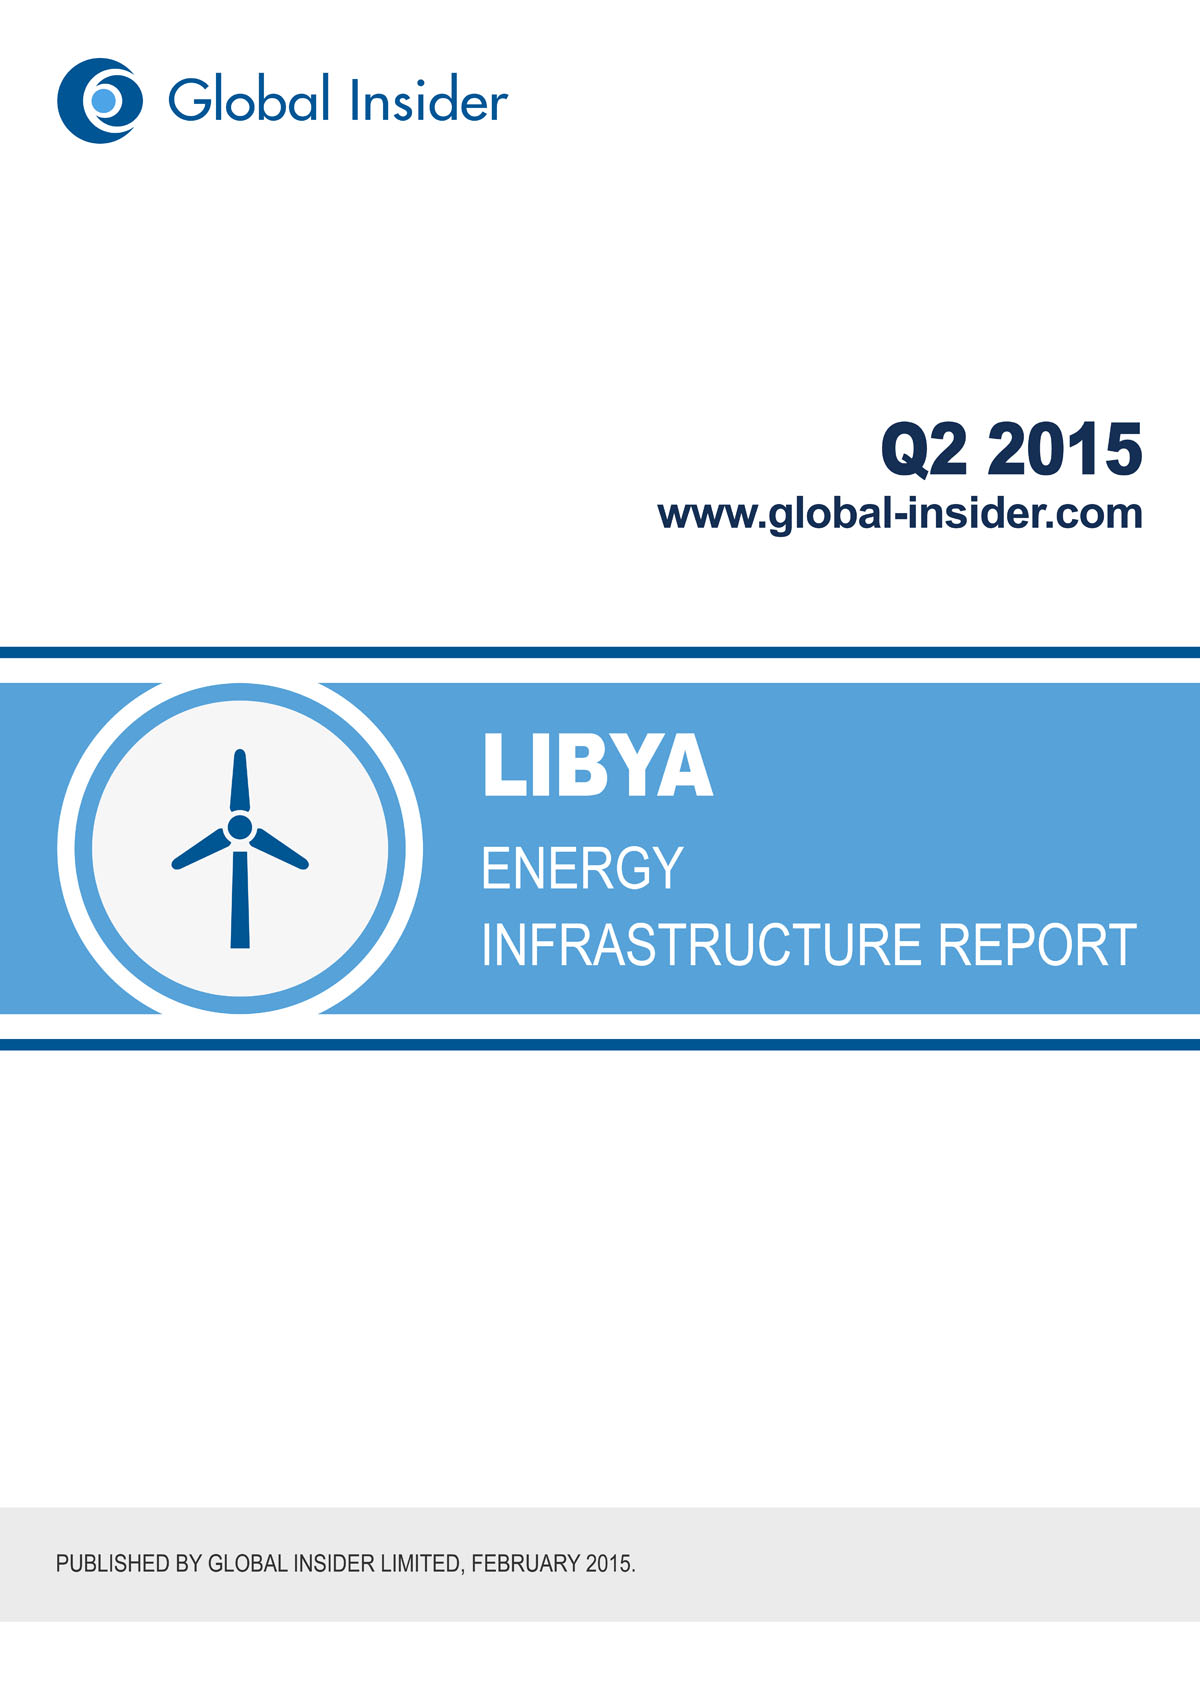 Libya Energy Infrastructure Report